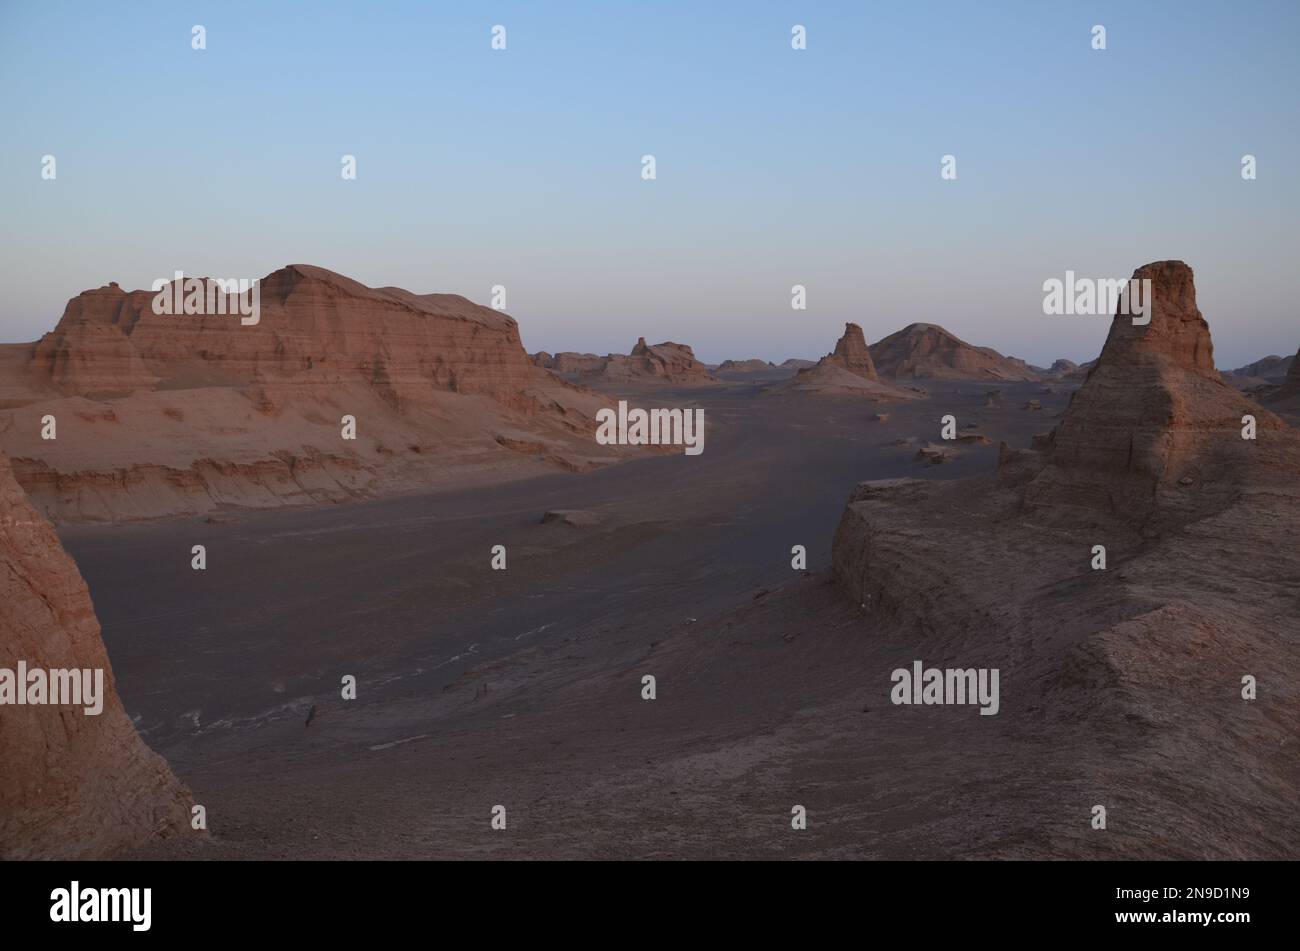 dry desert landscape of 'Kalouts desert', Iran in evening light Stock Photo